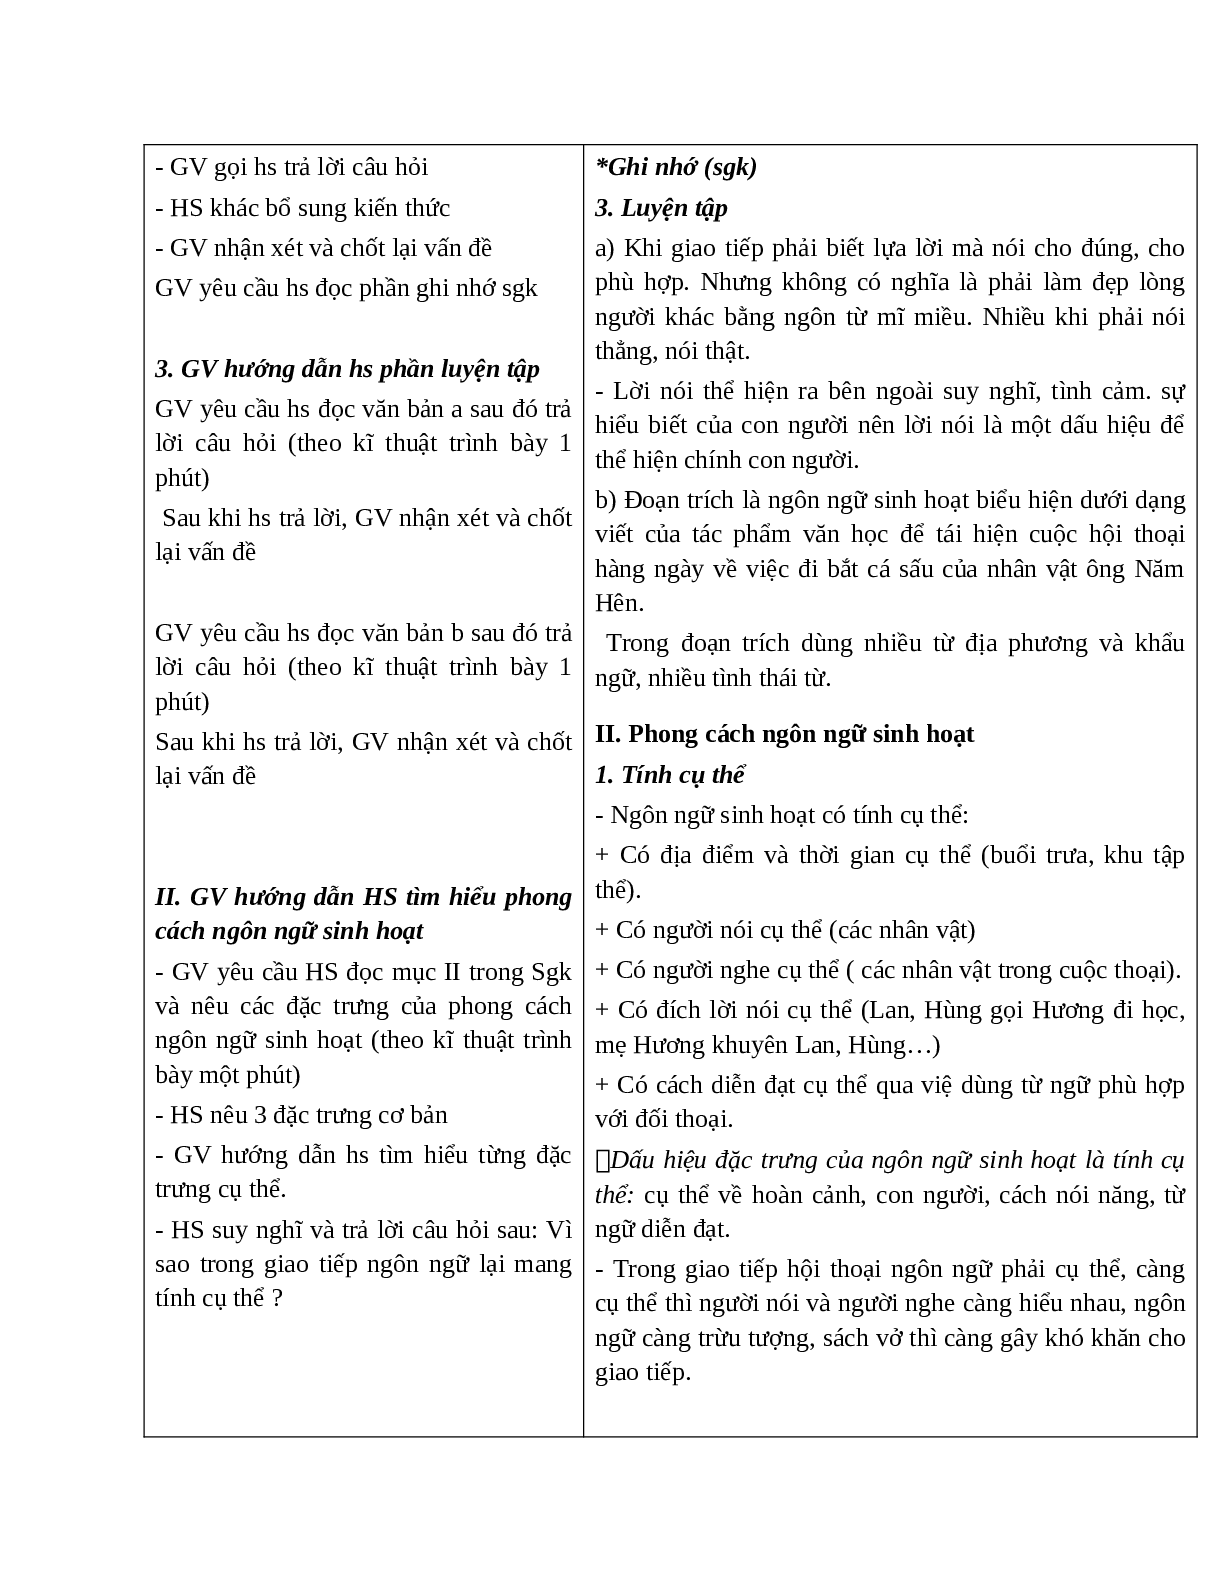 Giáo án Ngữ văn 10 tập 1 bài Phong cách ngôn ngữ sinh hoạt mới nhất (trang 3)